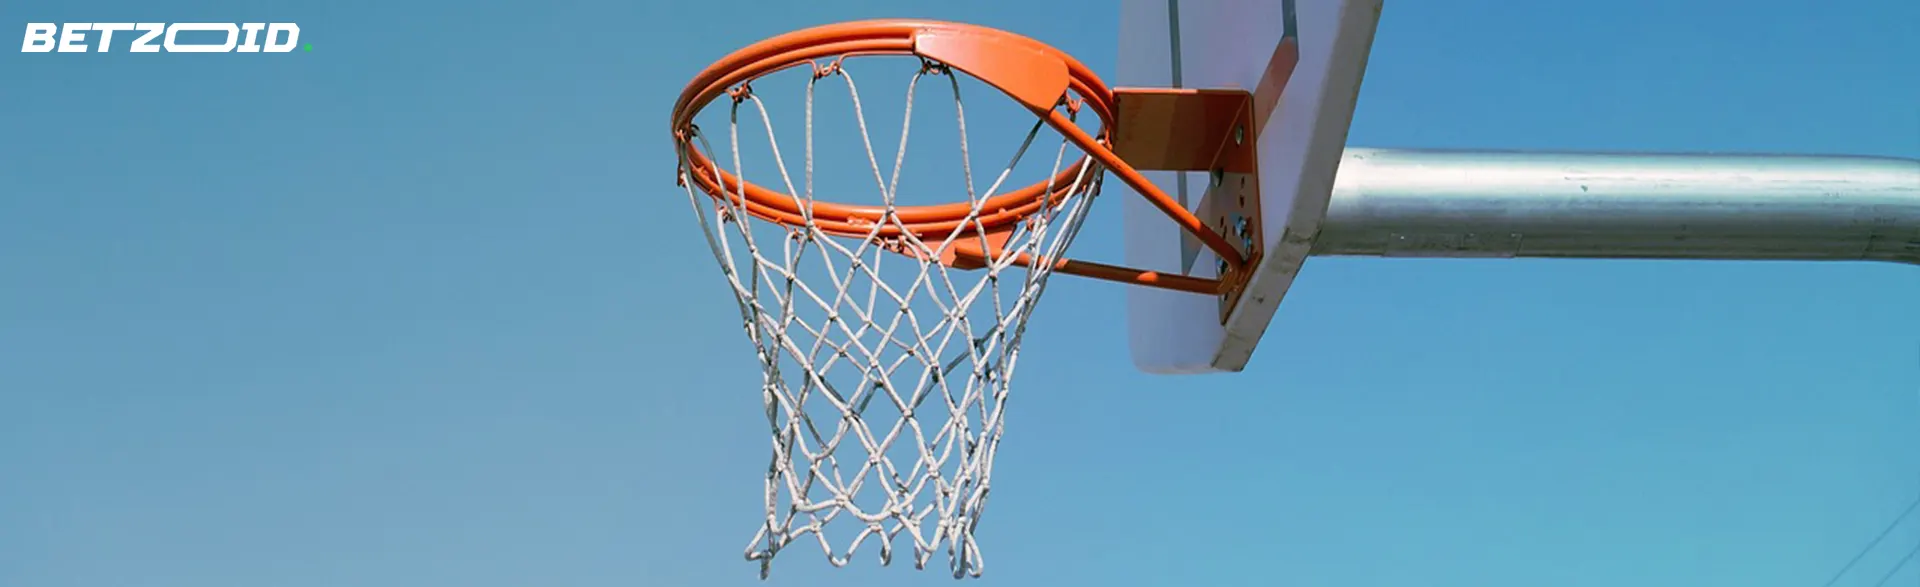 Basketball hoop against a clear blue sky.